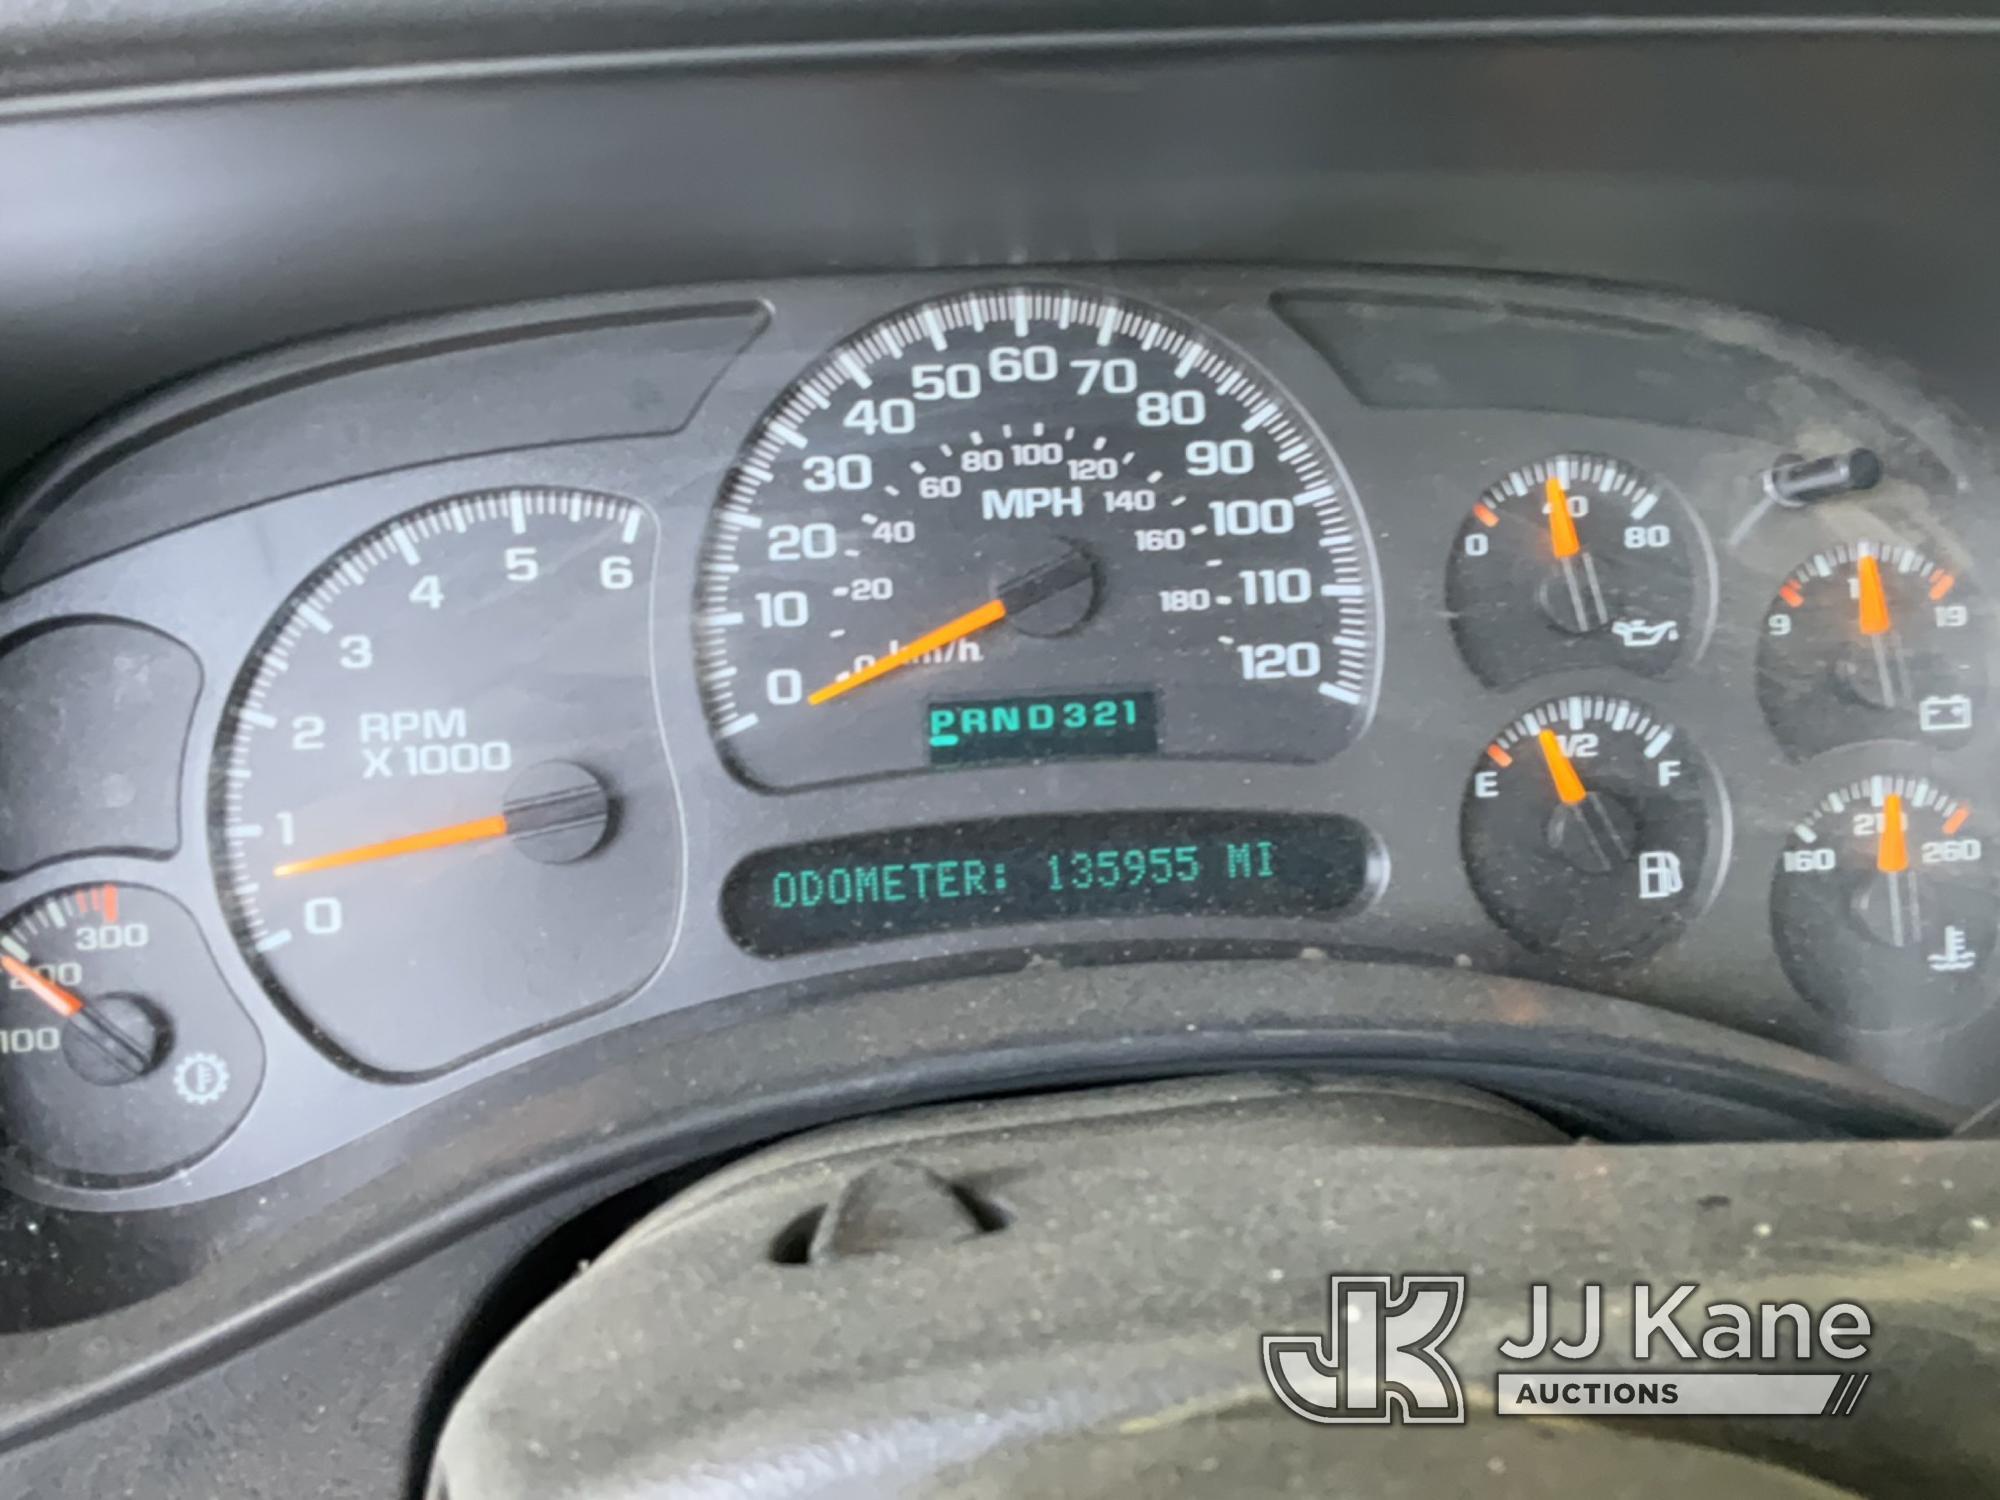 (Jurupa Valley, CA) 2004 Chevrolet Silverado 2500HD Extended-Cab Pickup Truck Runs & Moves